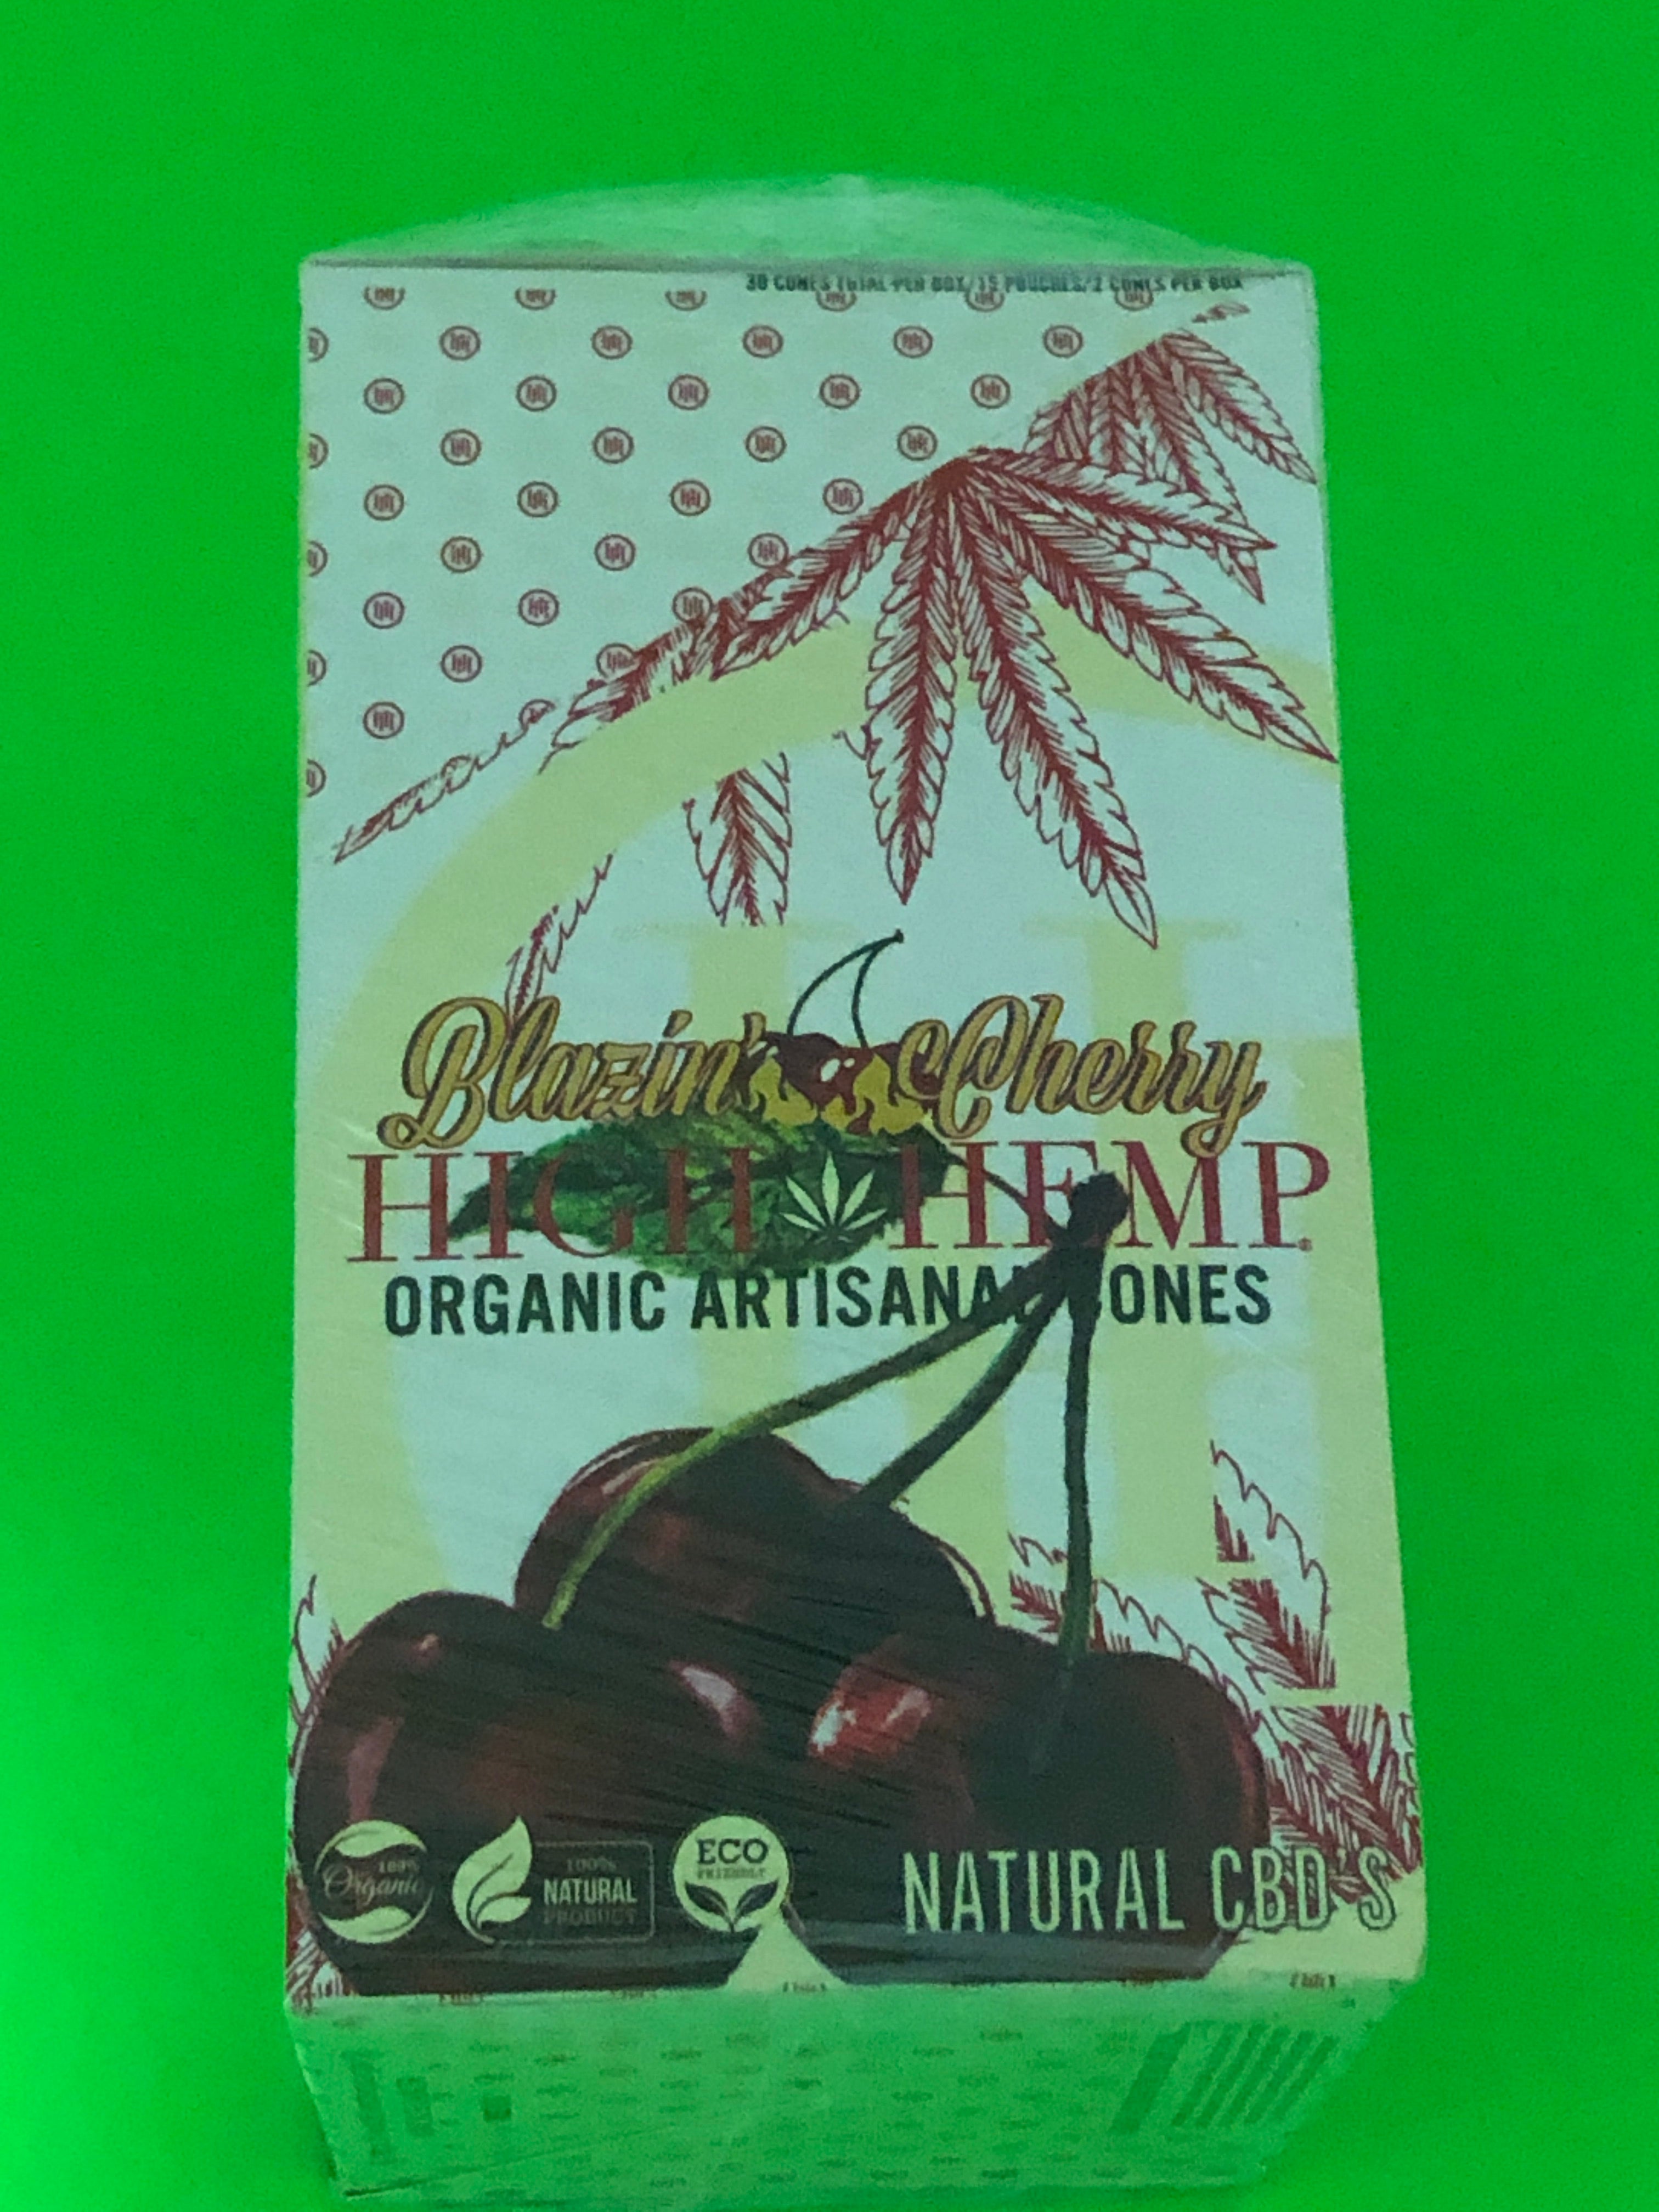 FREE GIFTS??+High Hemp Blazin??Cherry 30 Cones Organic Artisanal Natural 15 Packs Full??